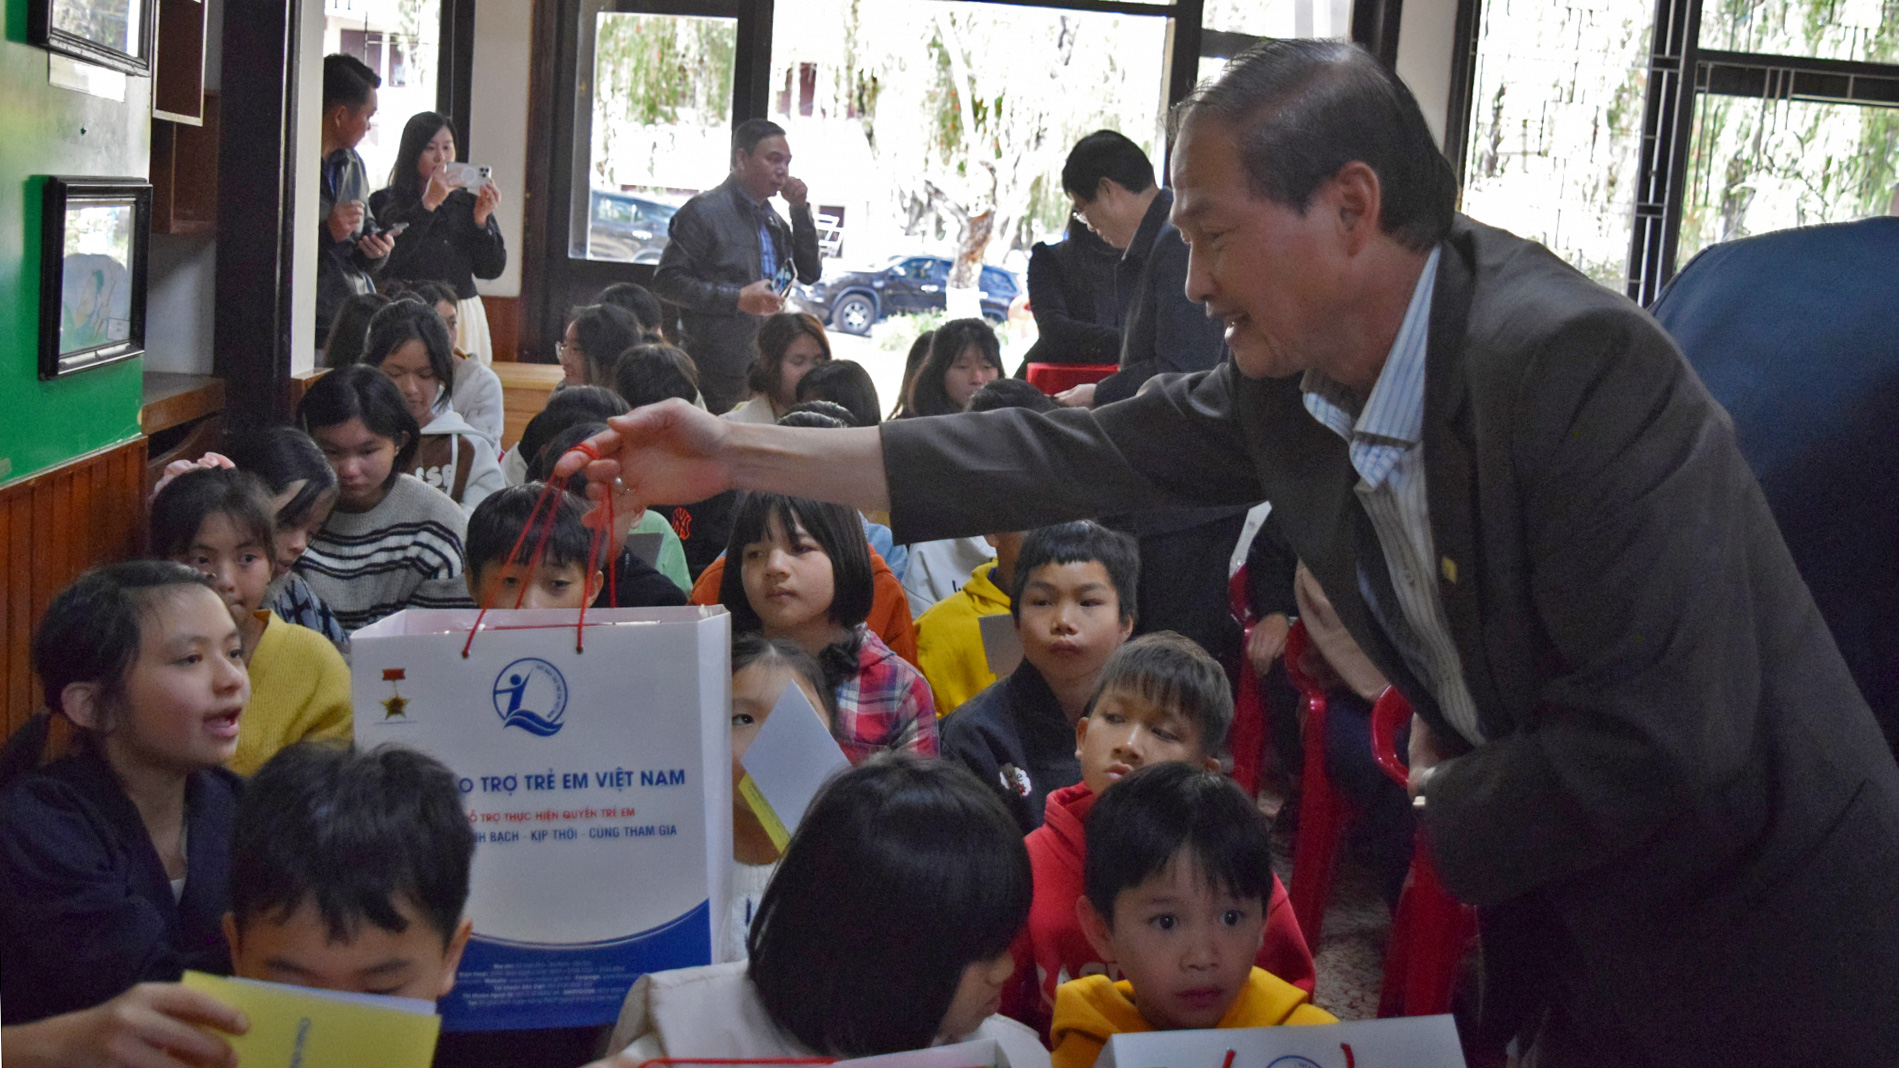 Đồng chí Nguyễn Trọng Ánh Đông - Ủy viên Ban Thường vụ Tỉnh ủy, Trưởng Ban Tổ chức Tỉnh ủy, trao quà cho các em